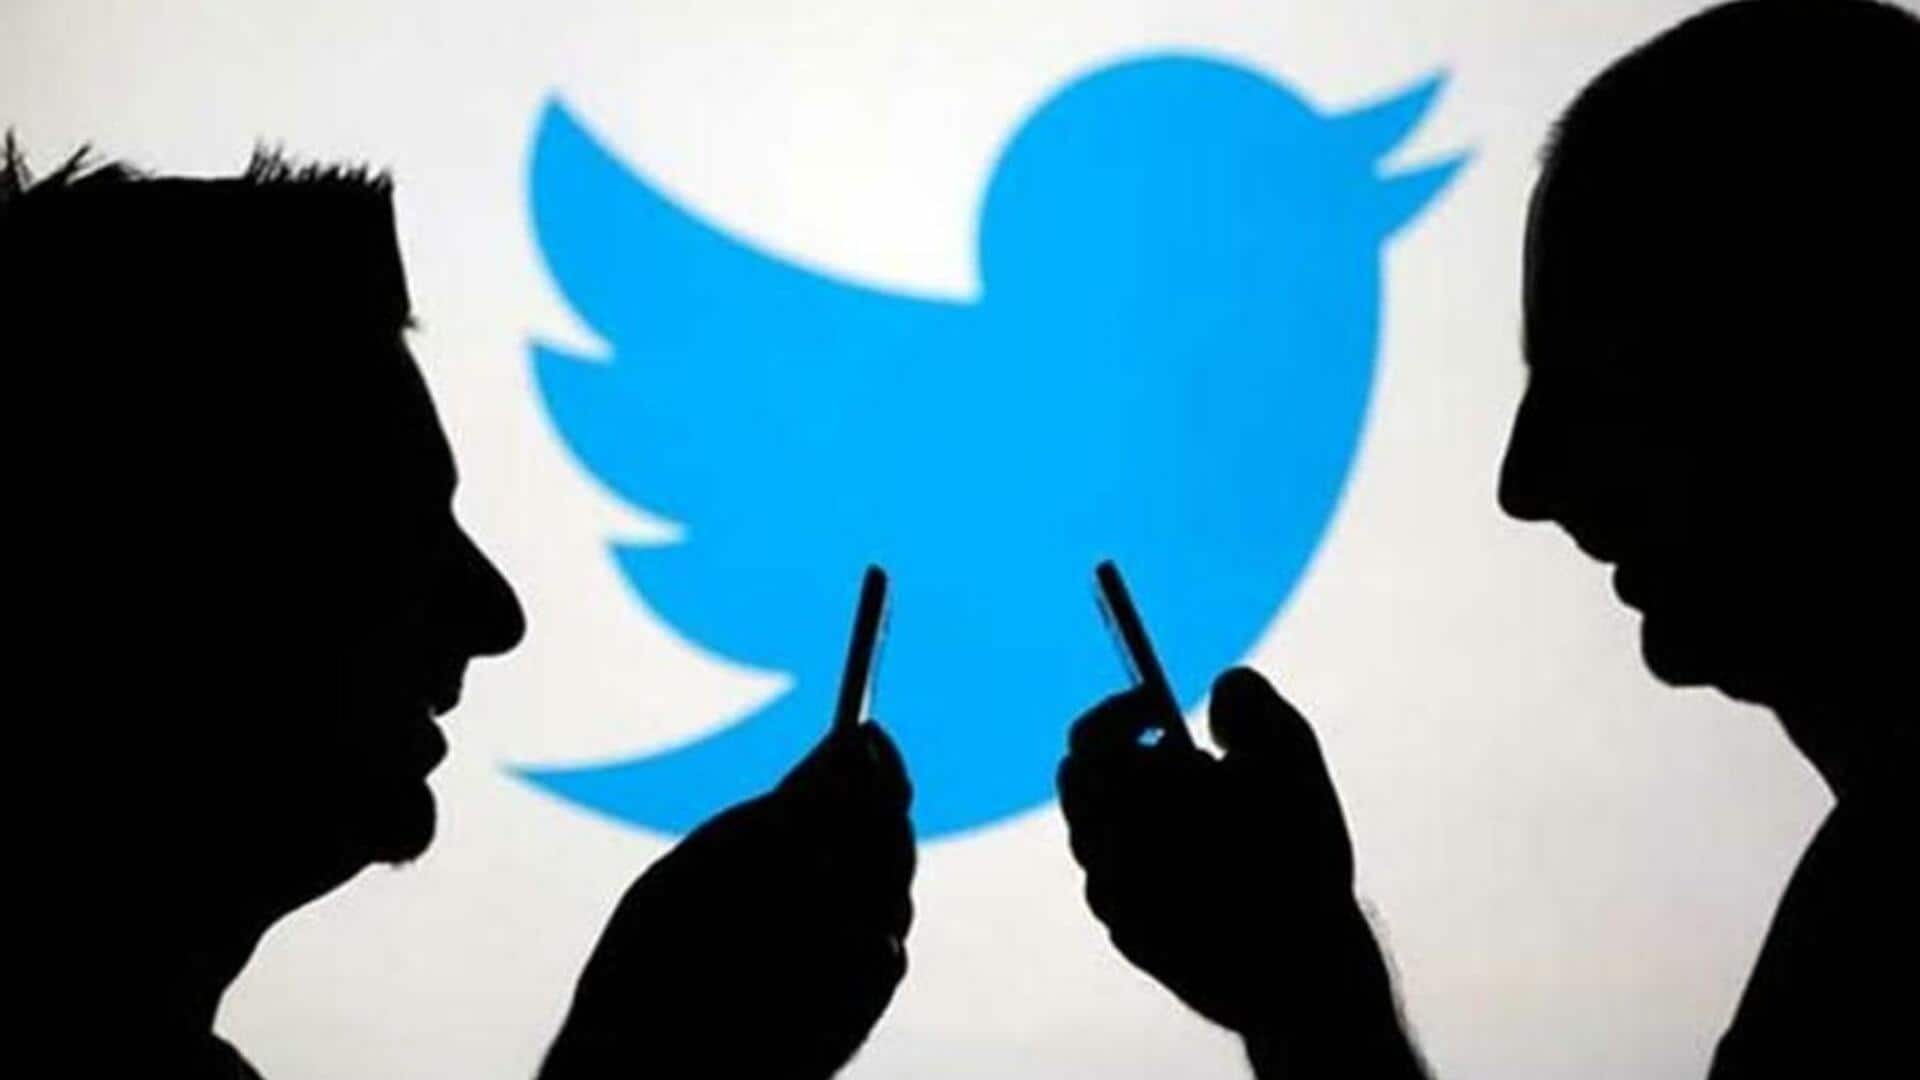 ट्विटर हुआ डाउन, दुनियाभर के यूजर्स नहीं देख पा रहे ट्वीट